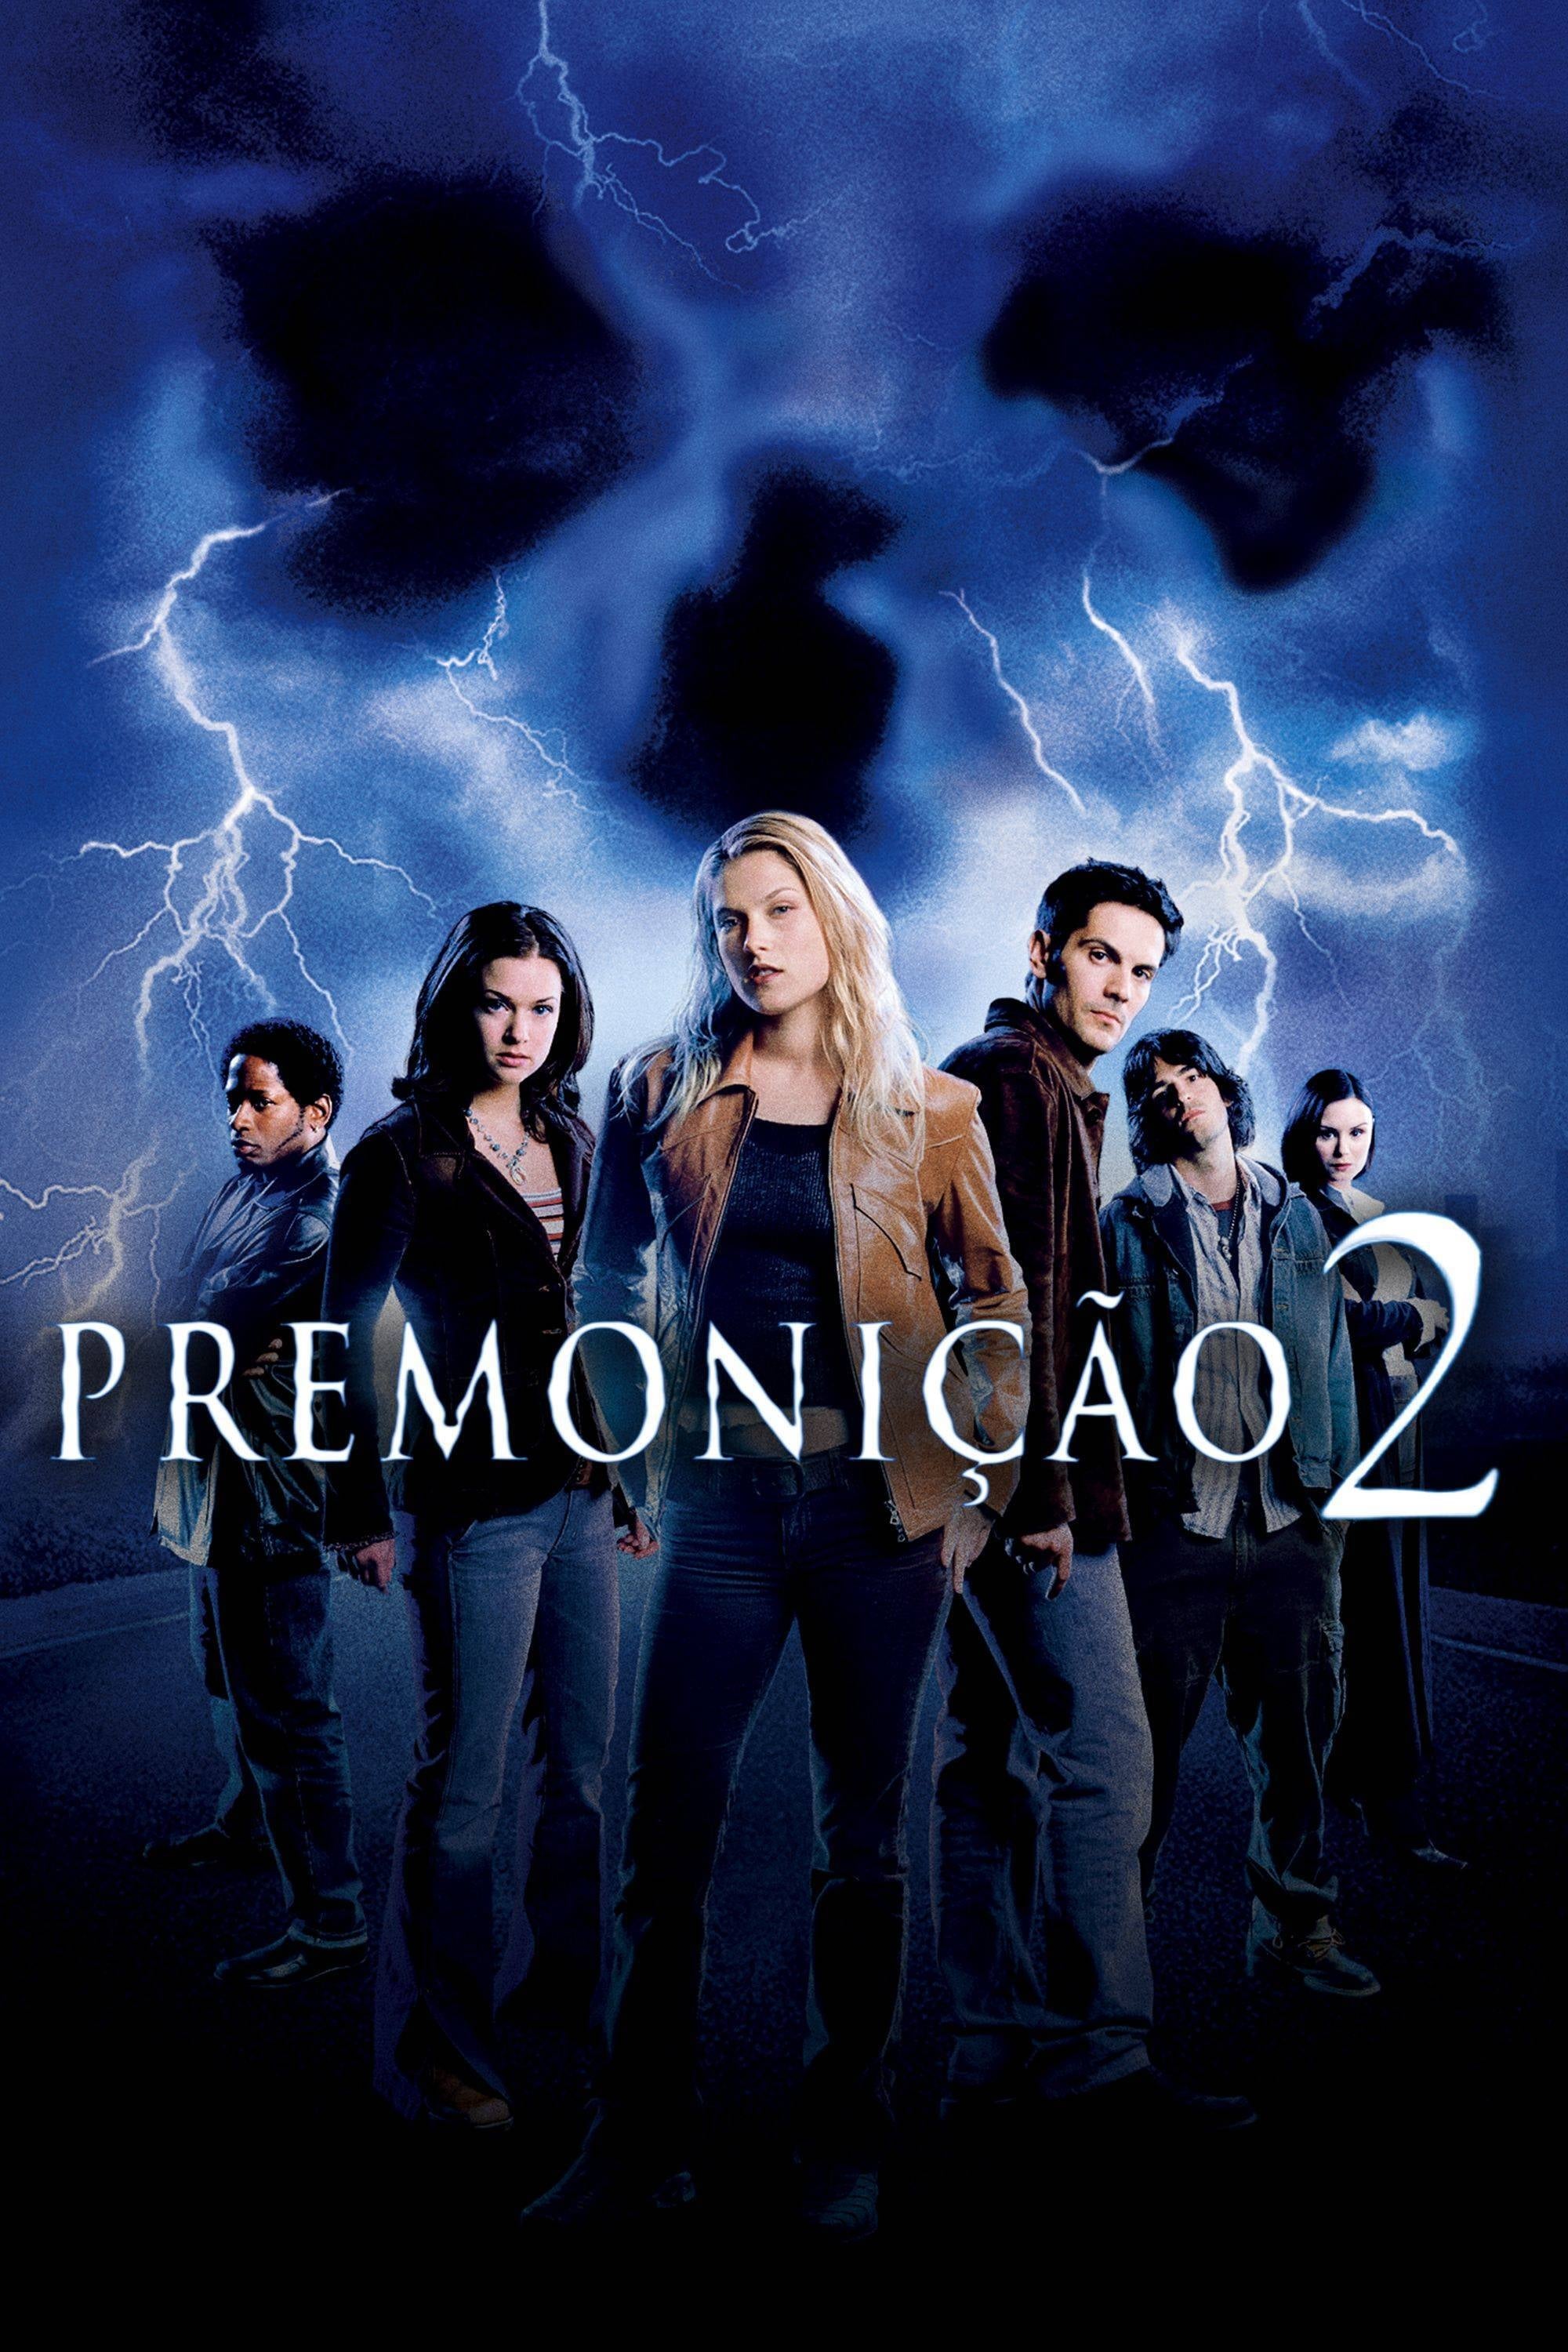 Premonição 2 - Filme 2002 - AdoroCinema